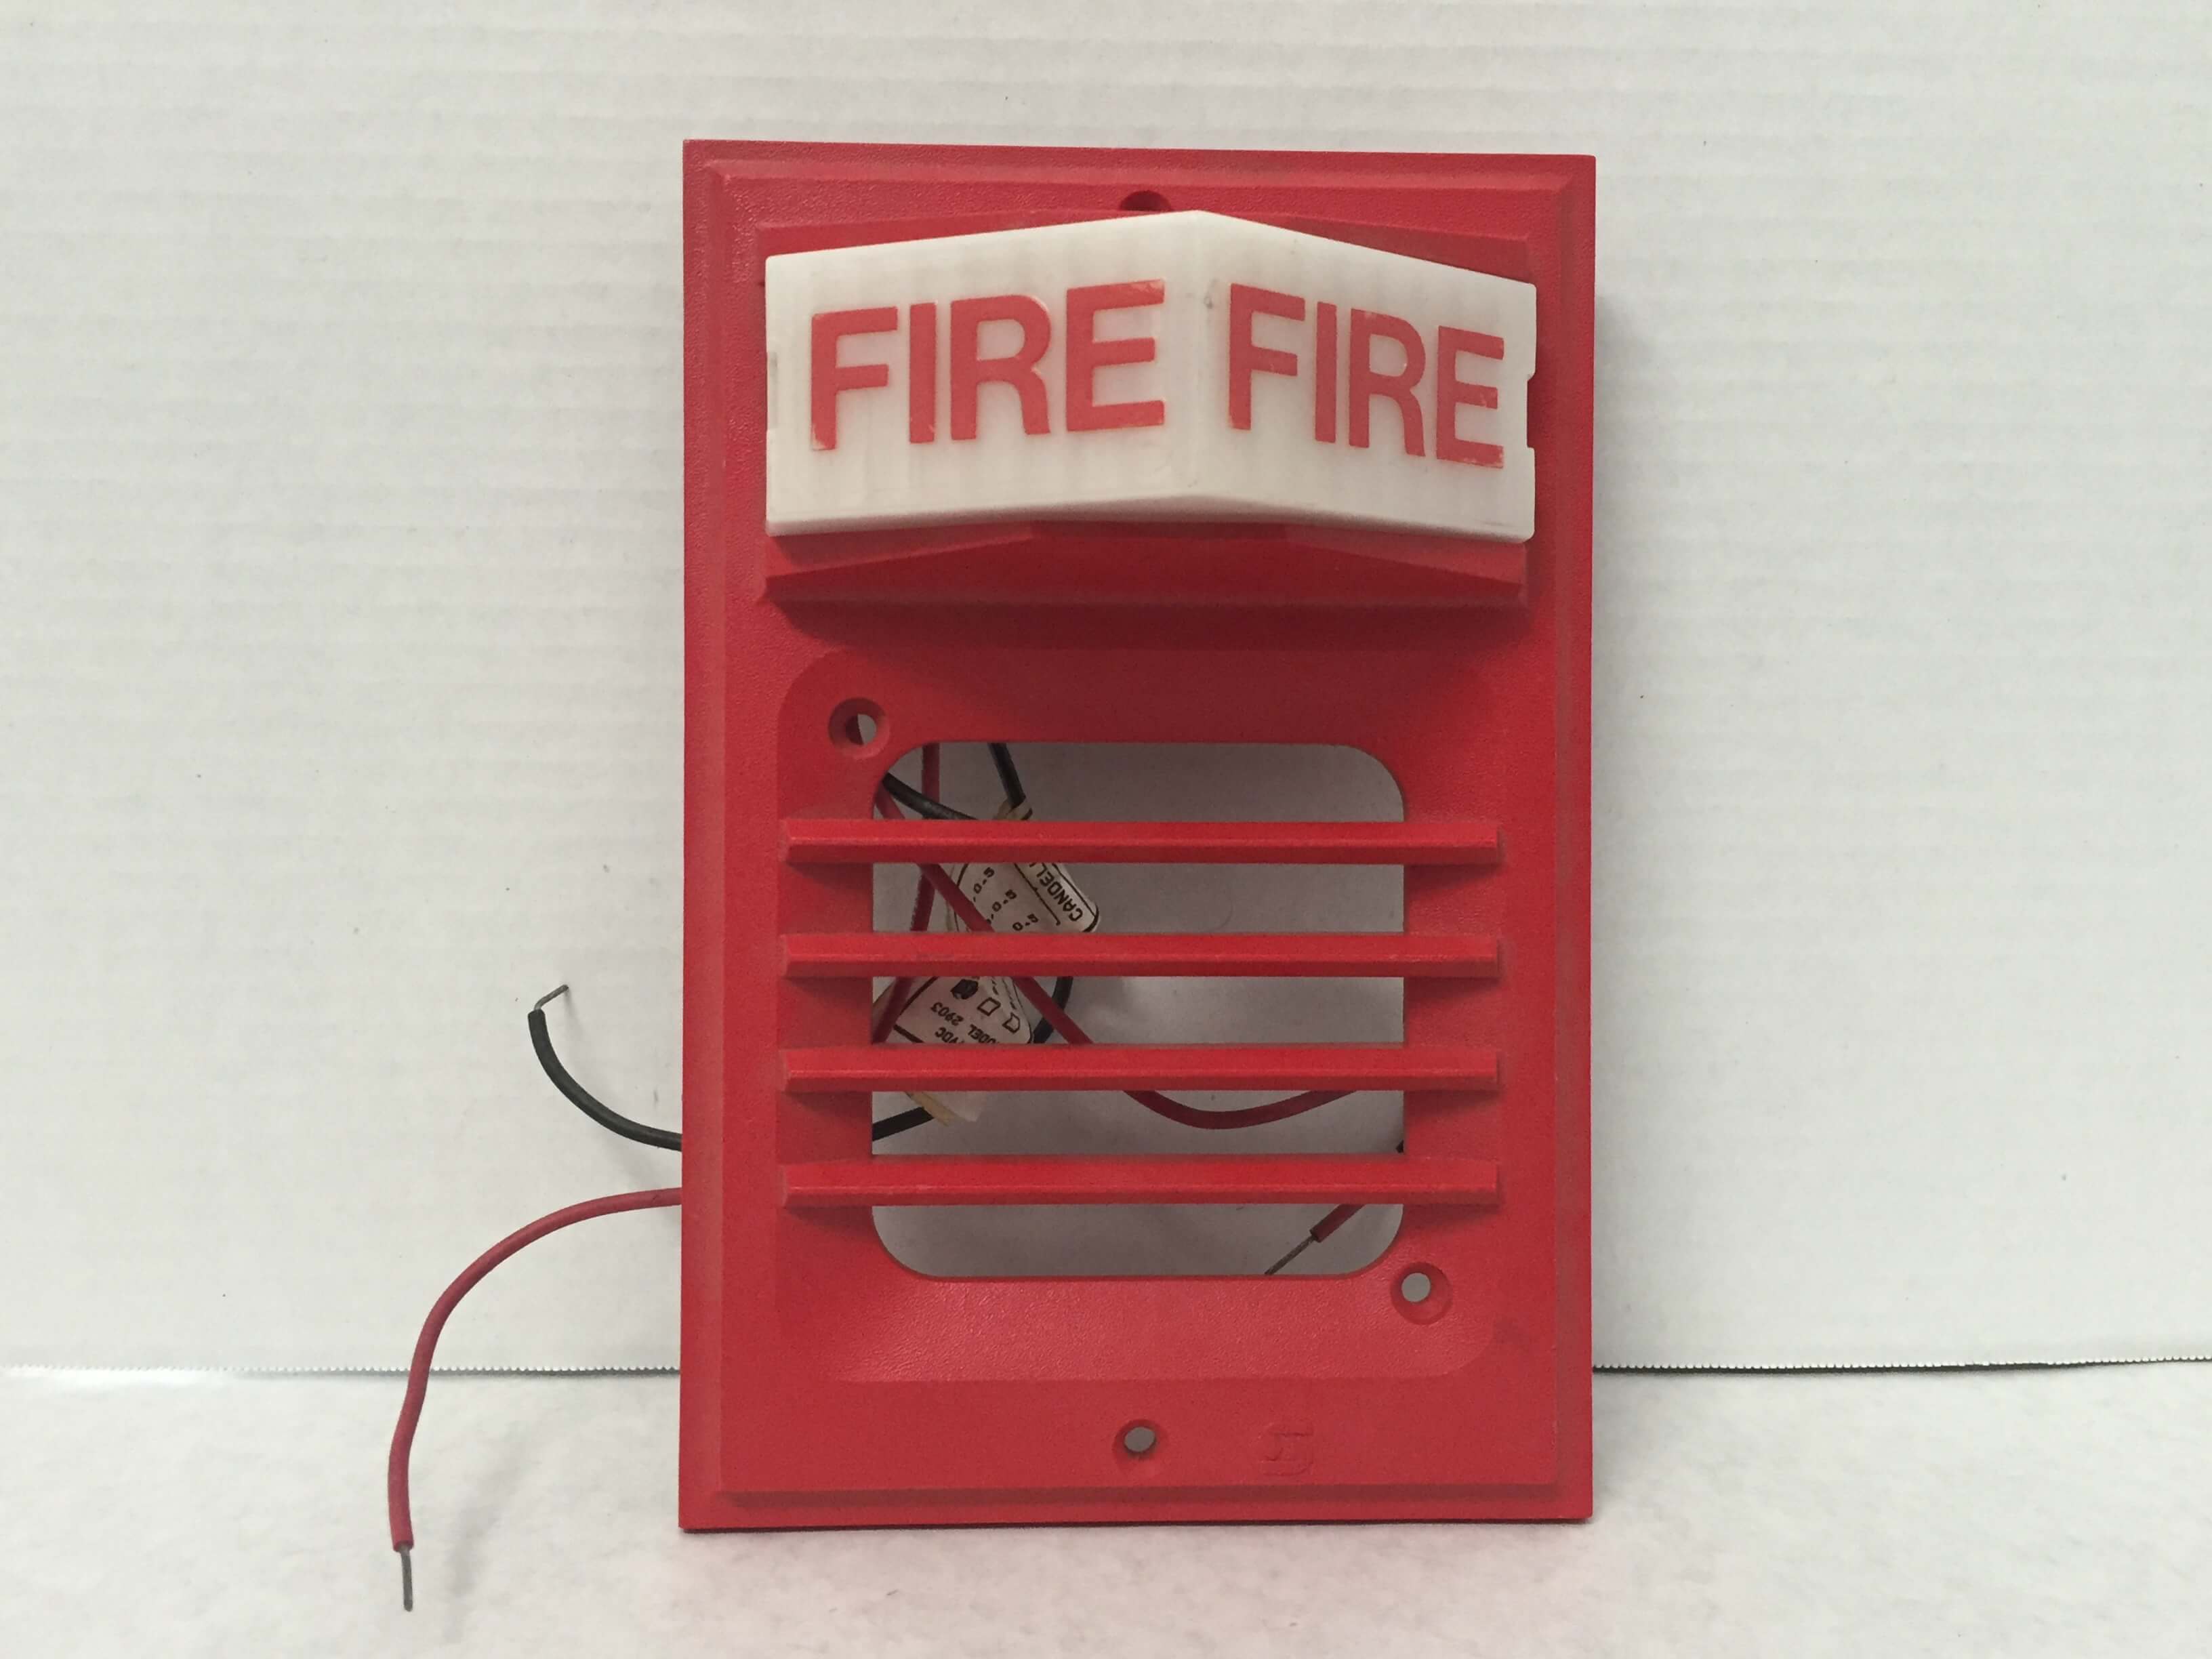 Simplex 2903-9101 - FireAlarms.tv - jjinc24/U8oL0's Fire Alarm ...